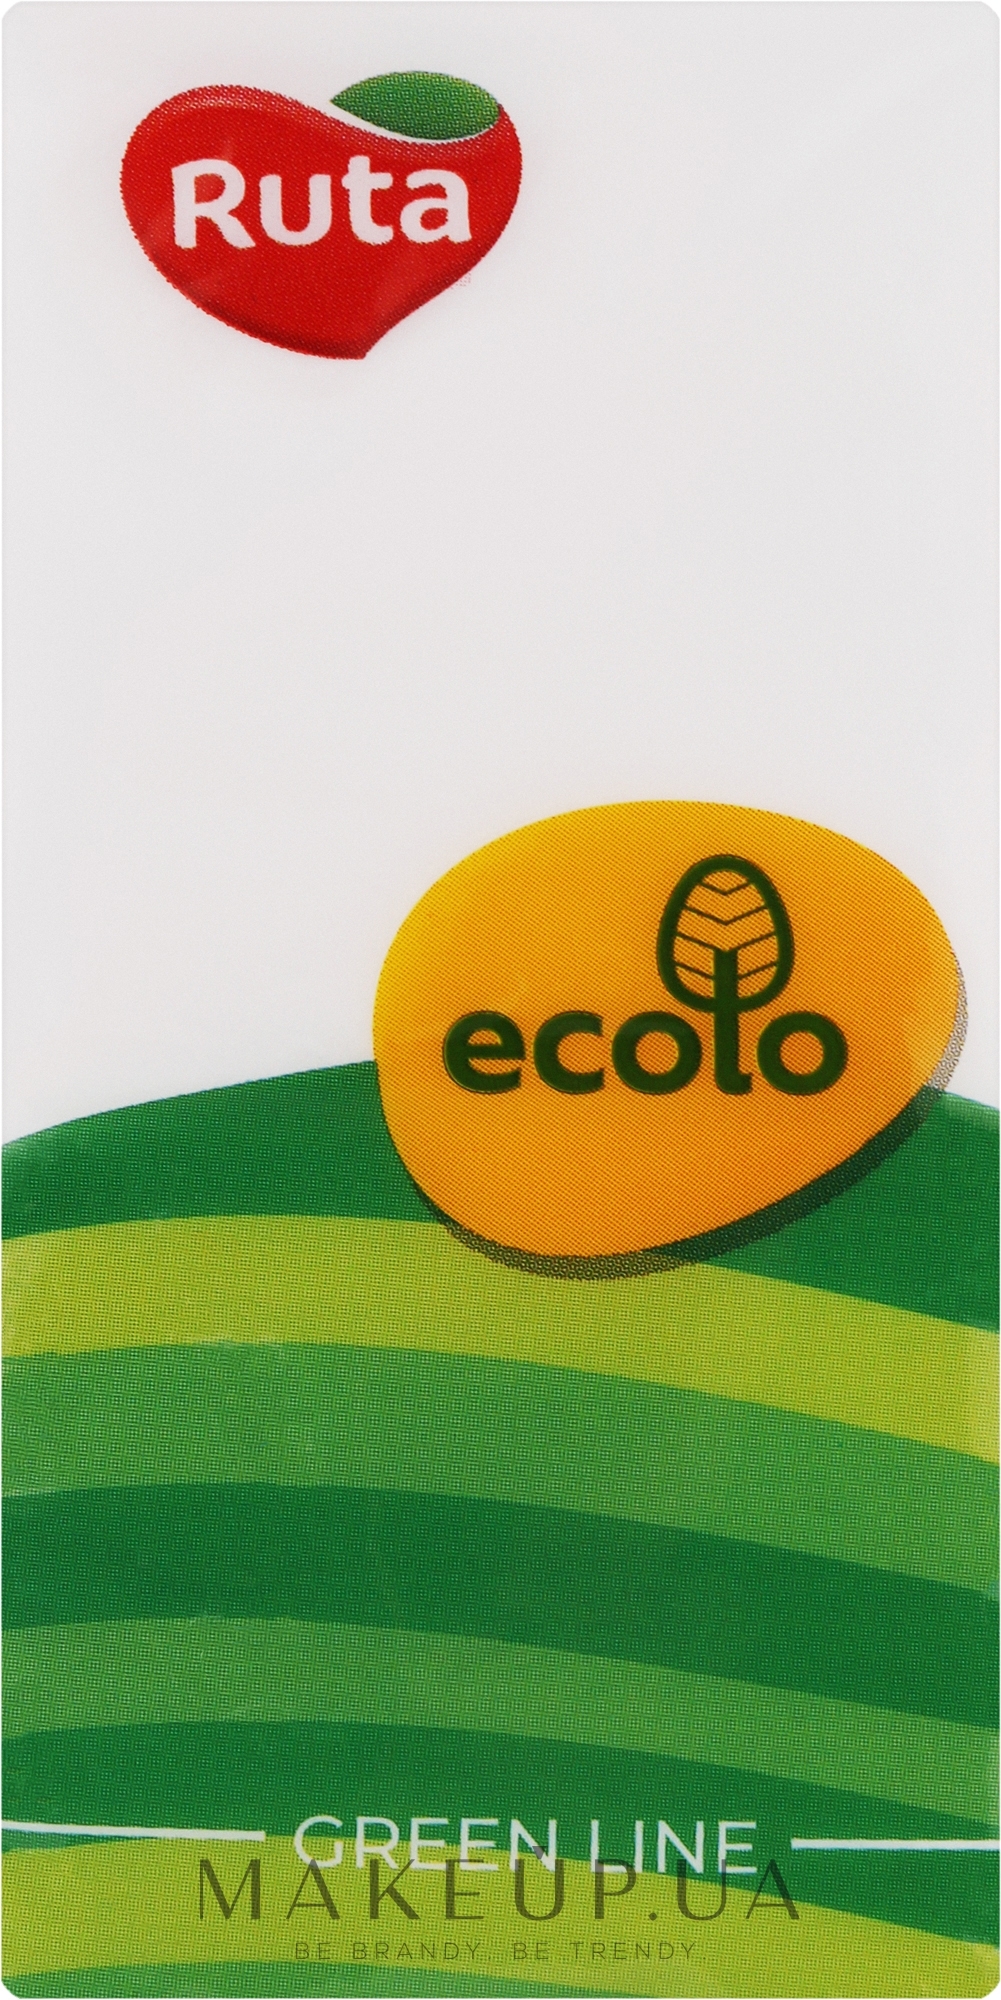 Платки носовые "Ecolo" 2-слойные без аромата - Ruta — фото 1уп